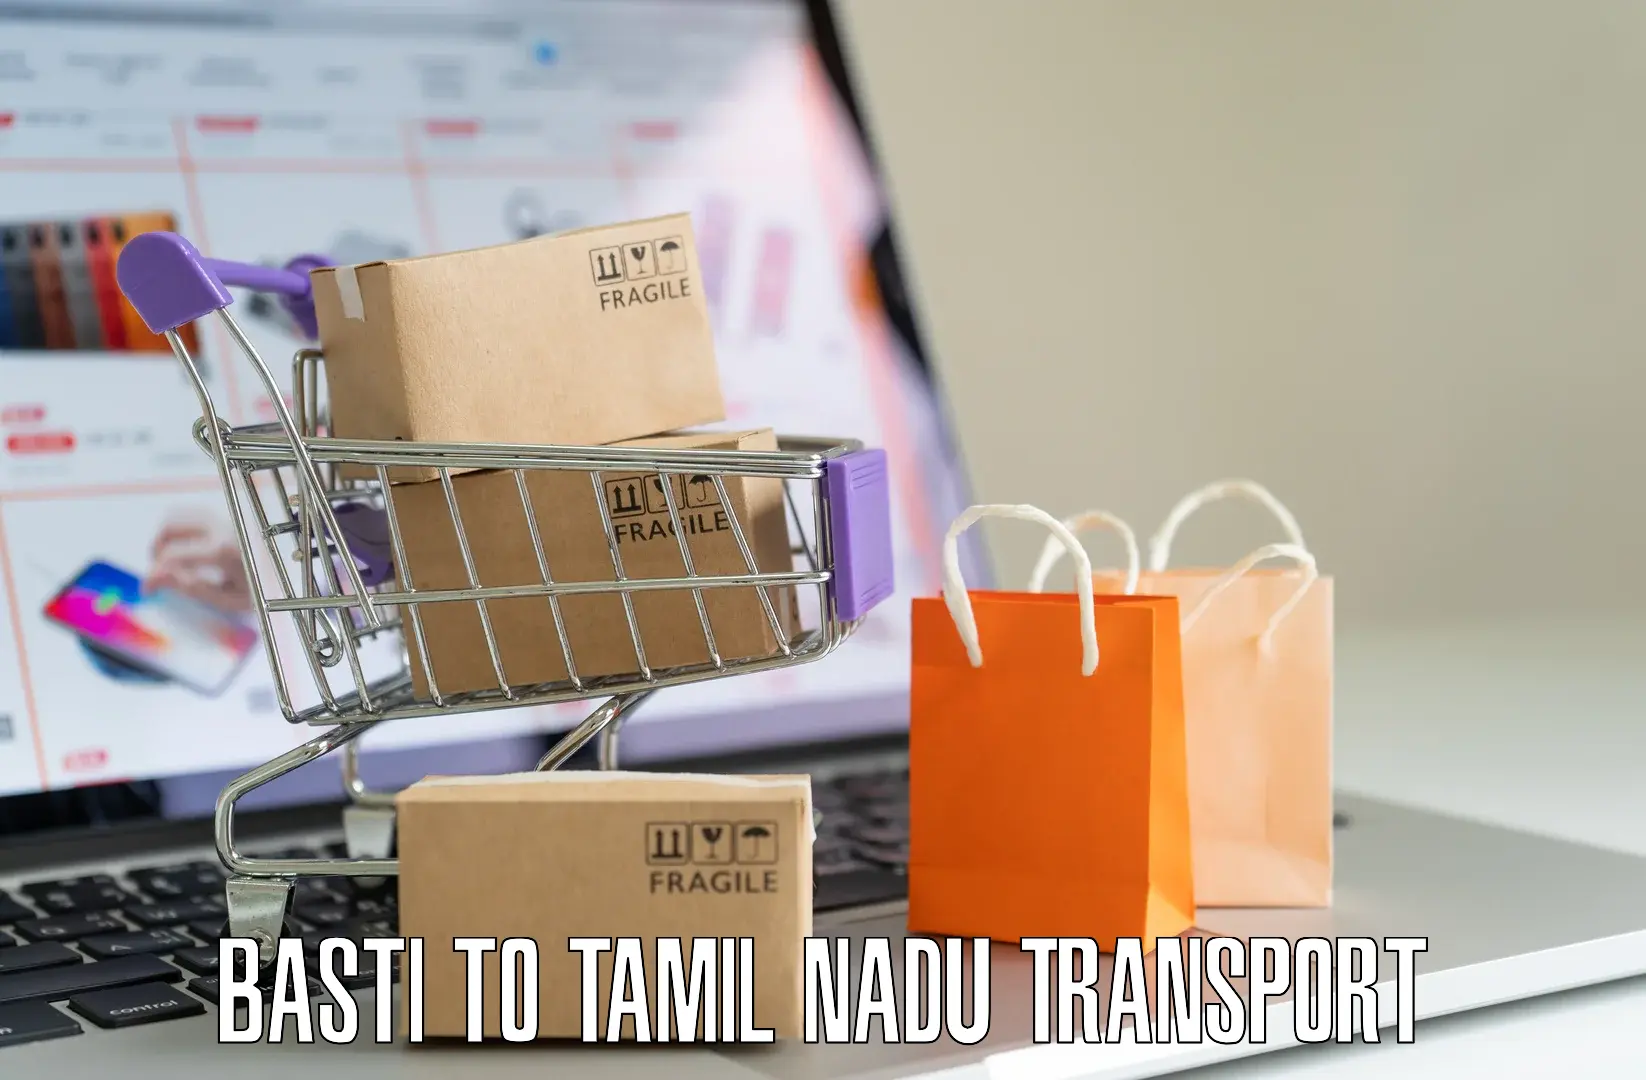 Logistics transportation services Basti to Thondi